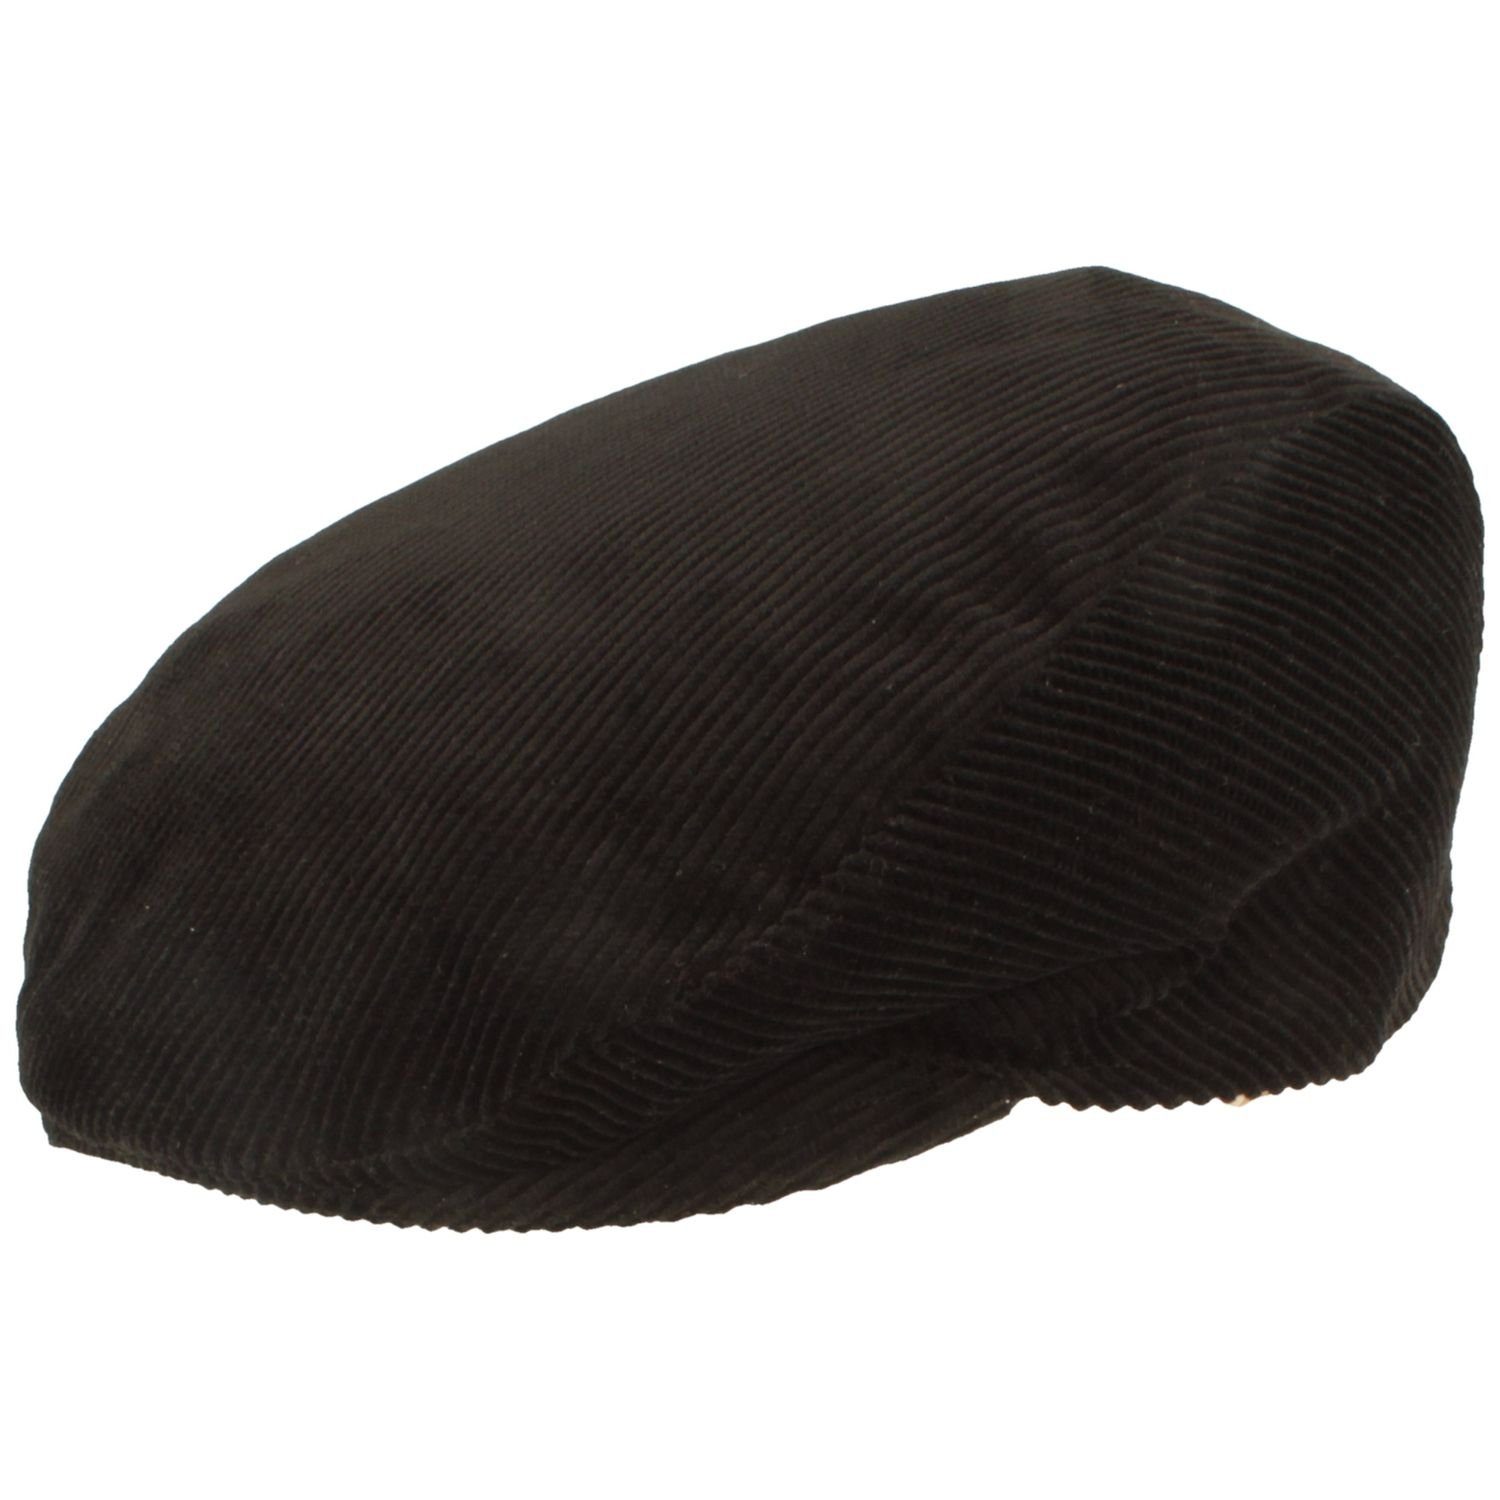 Breiter Schiebermütze Flatcap aus Baumwolle mit Cord-Streifen schwarz